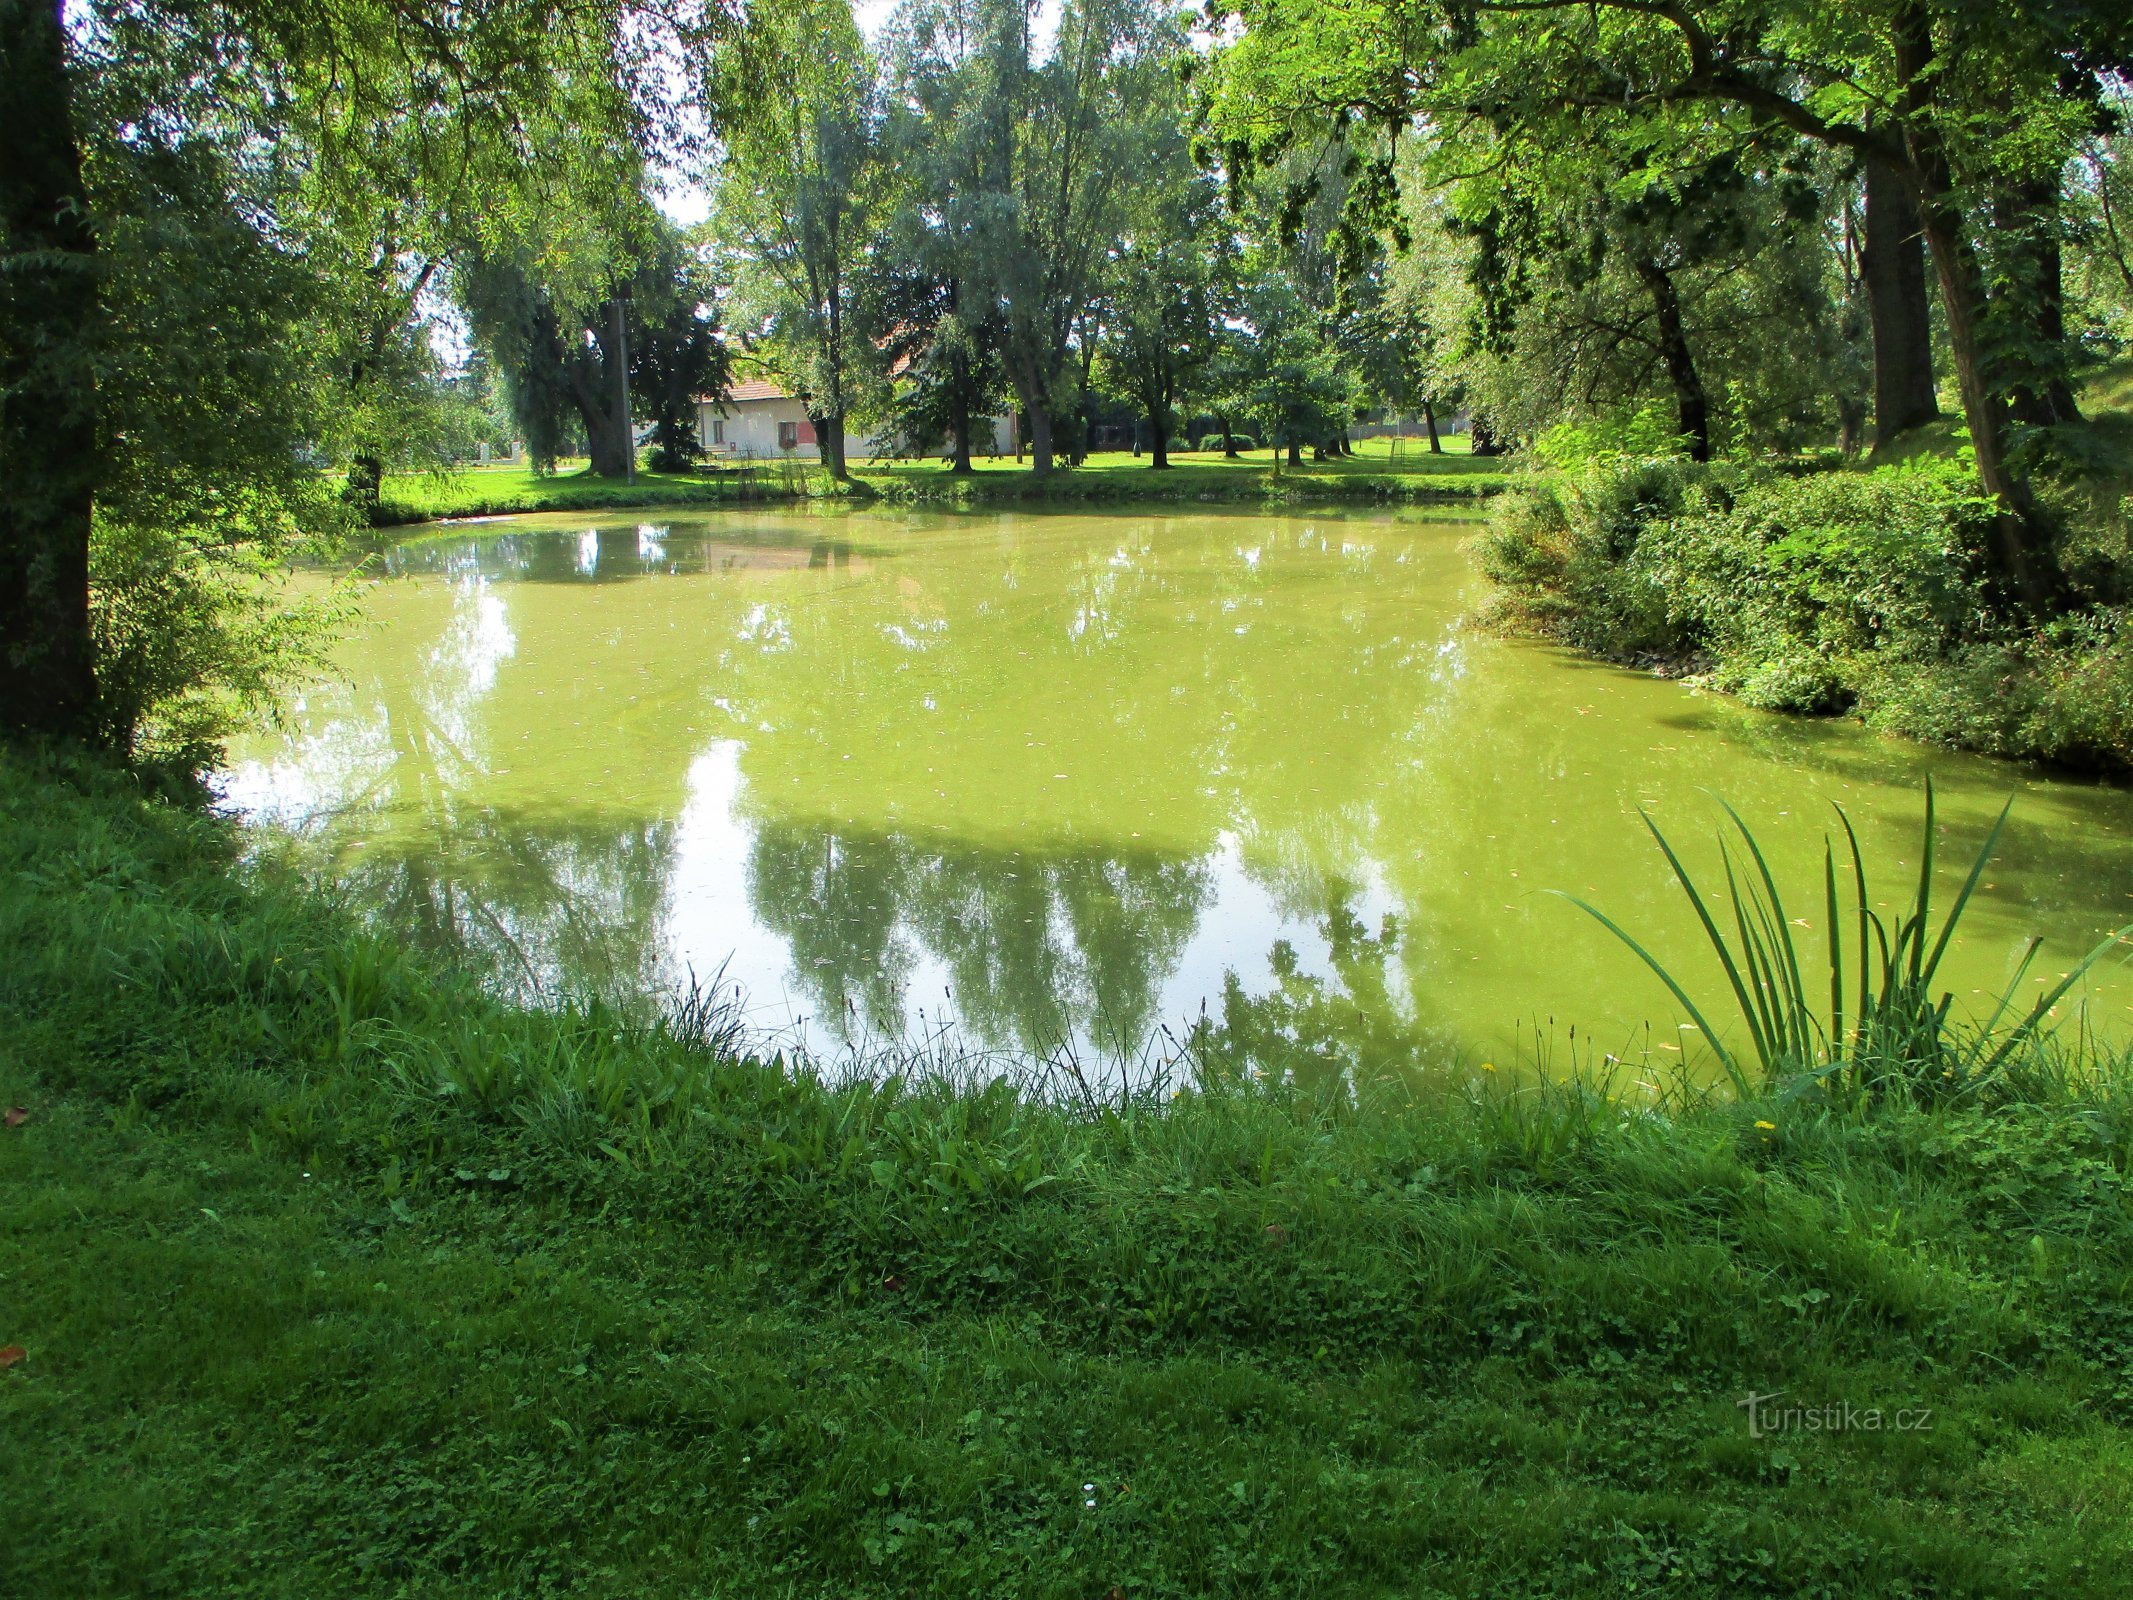 Village pond "Lednice" (Obědovice, 13.9.2020/XNUMX/XNUMX)